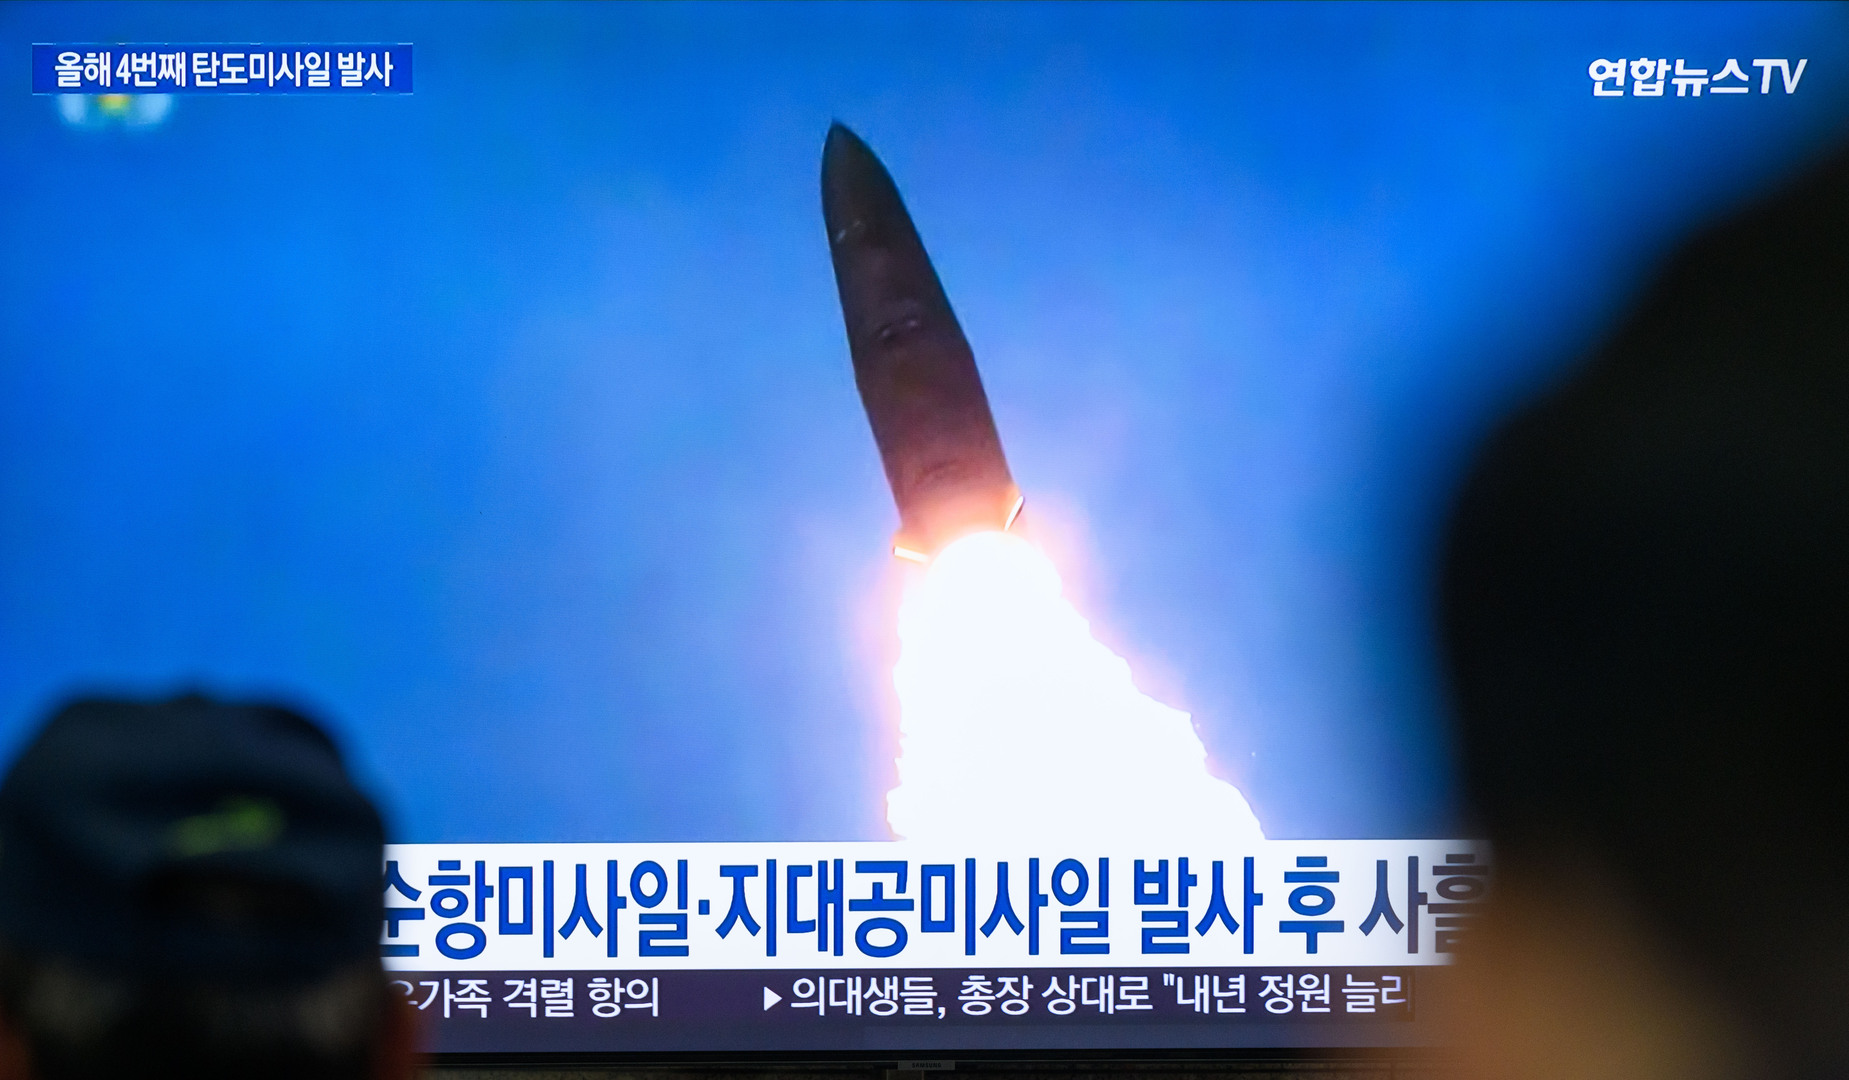 إطلاق كوريا الشمالية عدة صواريخ باليستية قصيرة المدى باتجاه البحر الشرقي، أرشيف